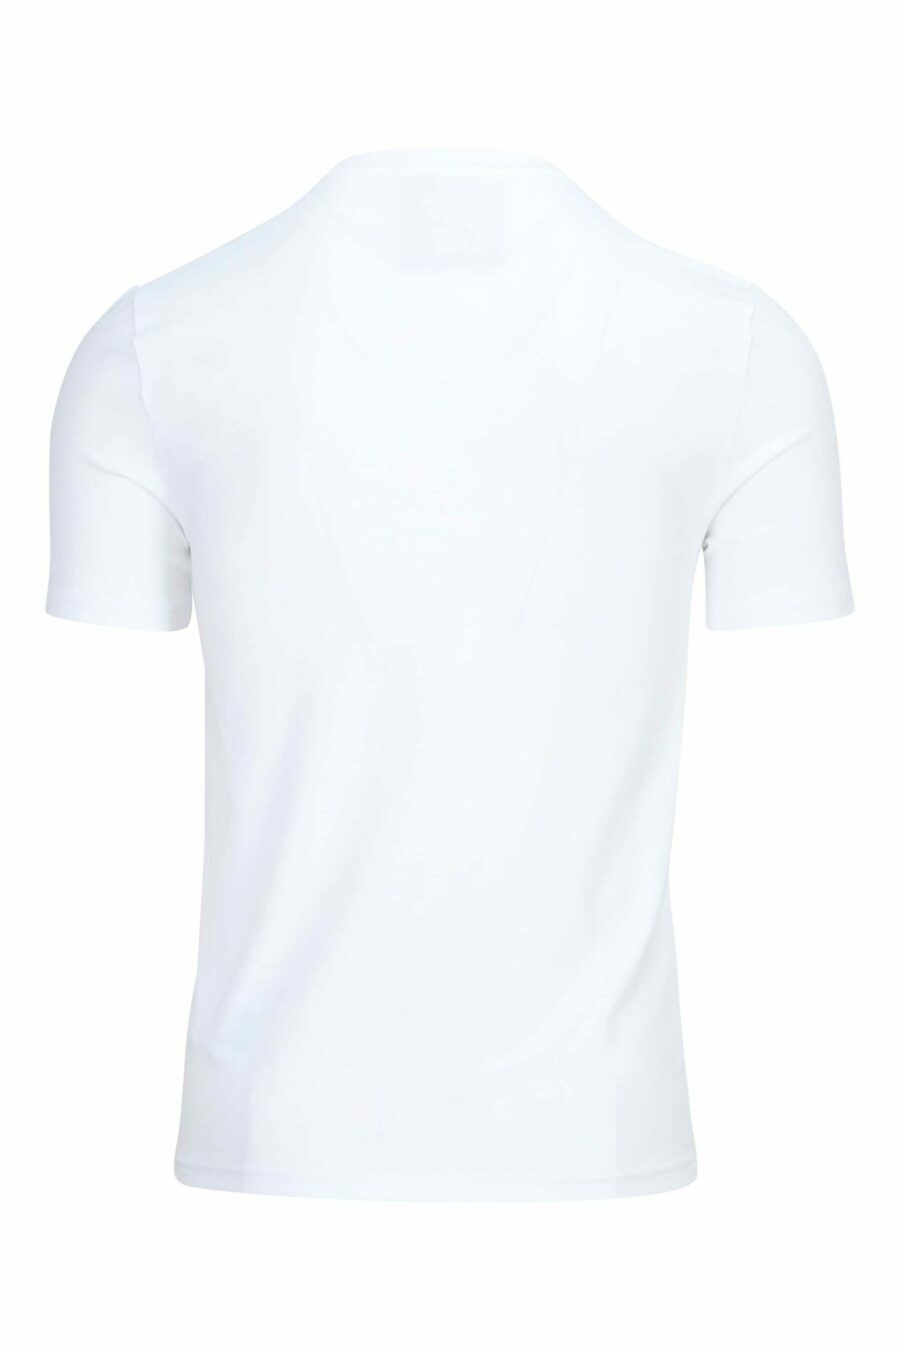 T-shirt branca com maxilogue preto clássico - 889316934960 1 scaled